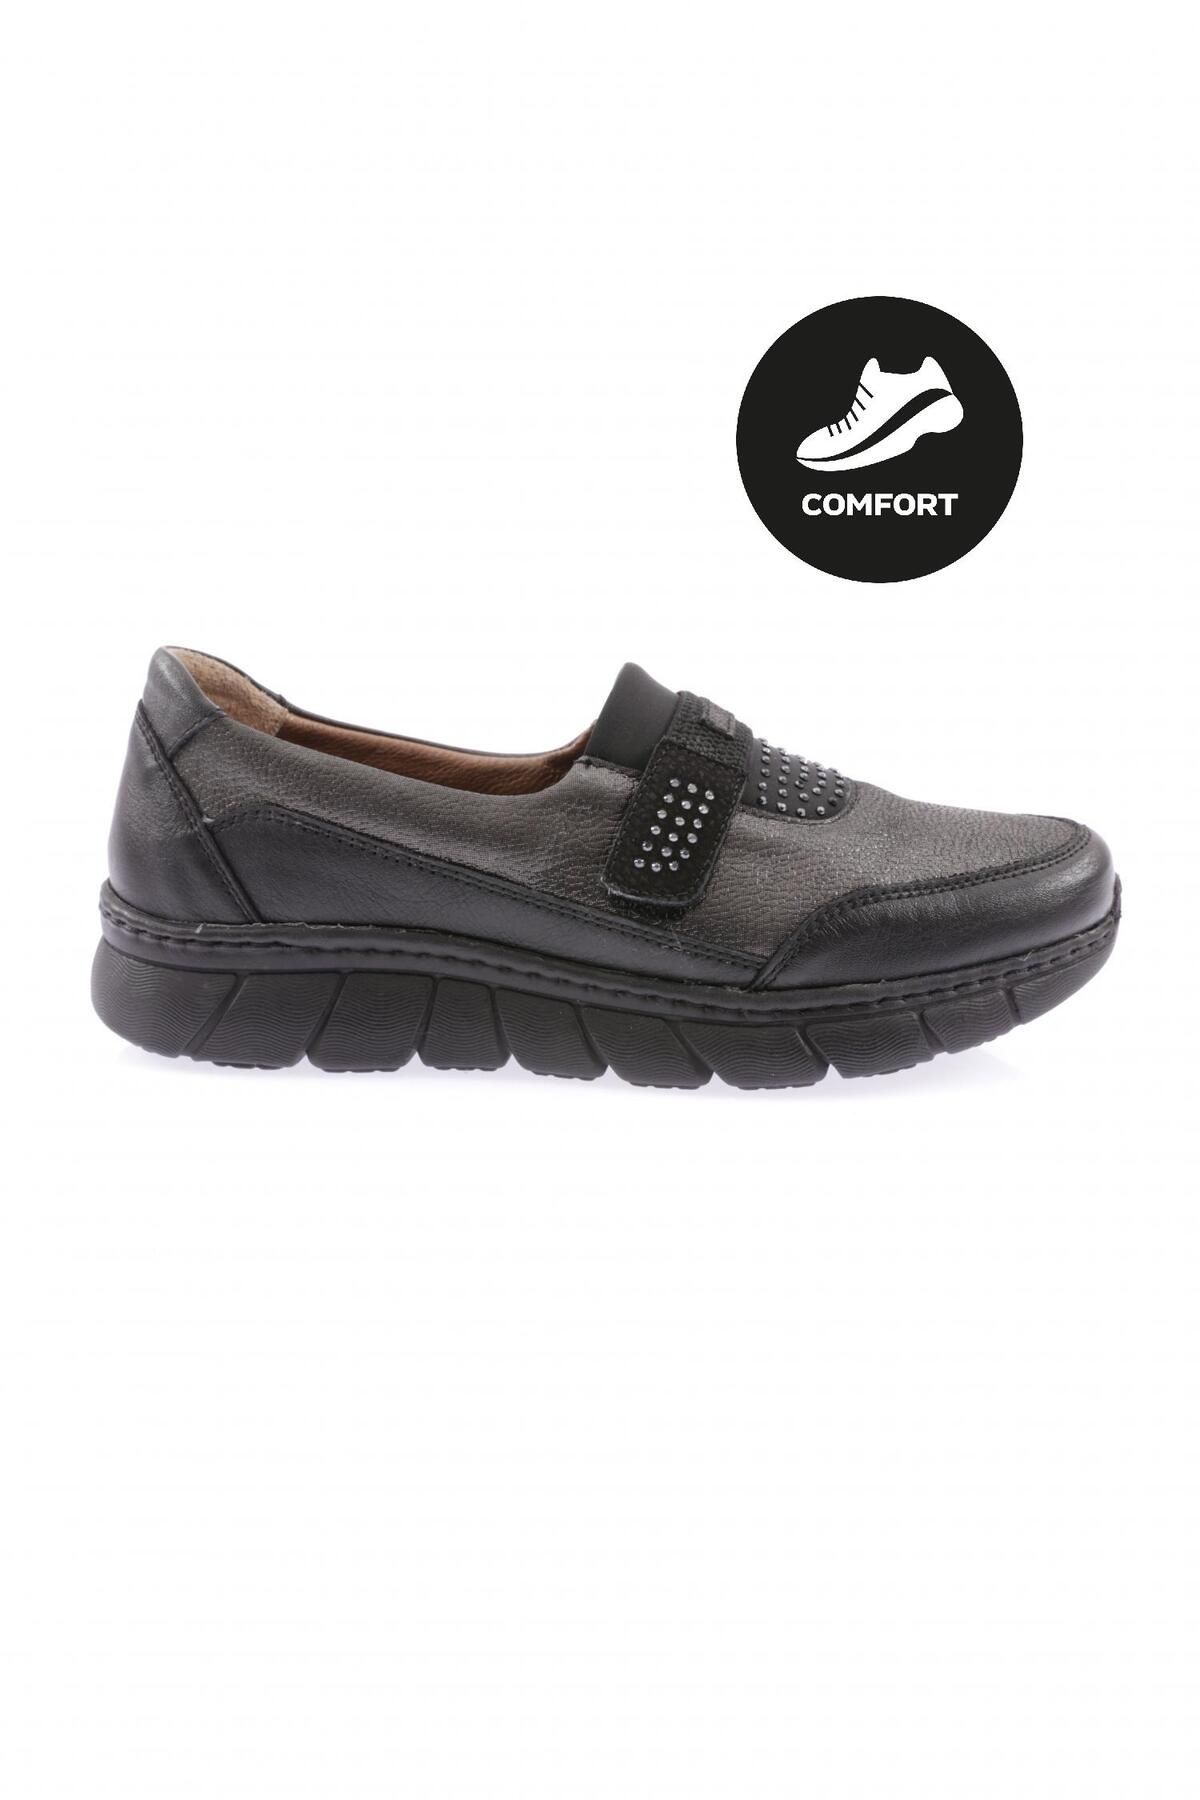 Dgn 4215-23y Kadin Comfort Ayakkabı